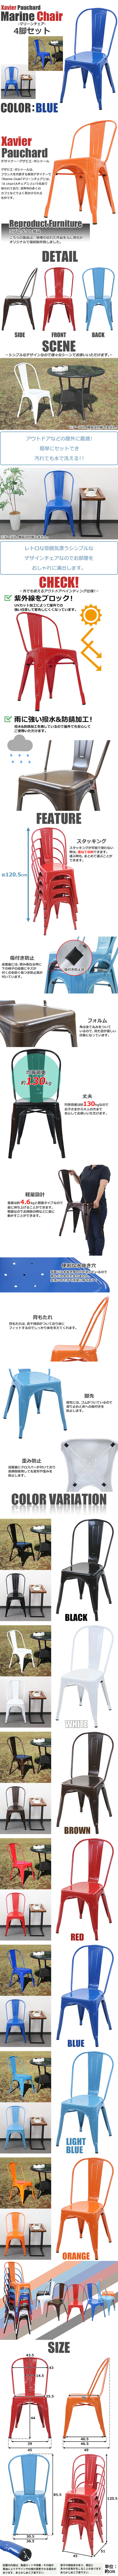 在庫日本製送料無料 マリーンチェア Aチェア メタルチェア 4脚セット ガーデンチェア グザビエ・ポシャール ダイニングチェア 軽量 ブルー ガーデンファニチャー